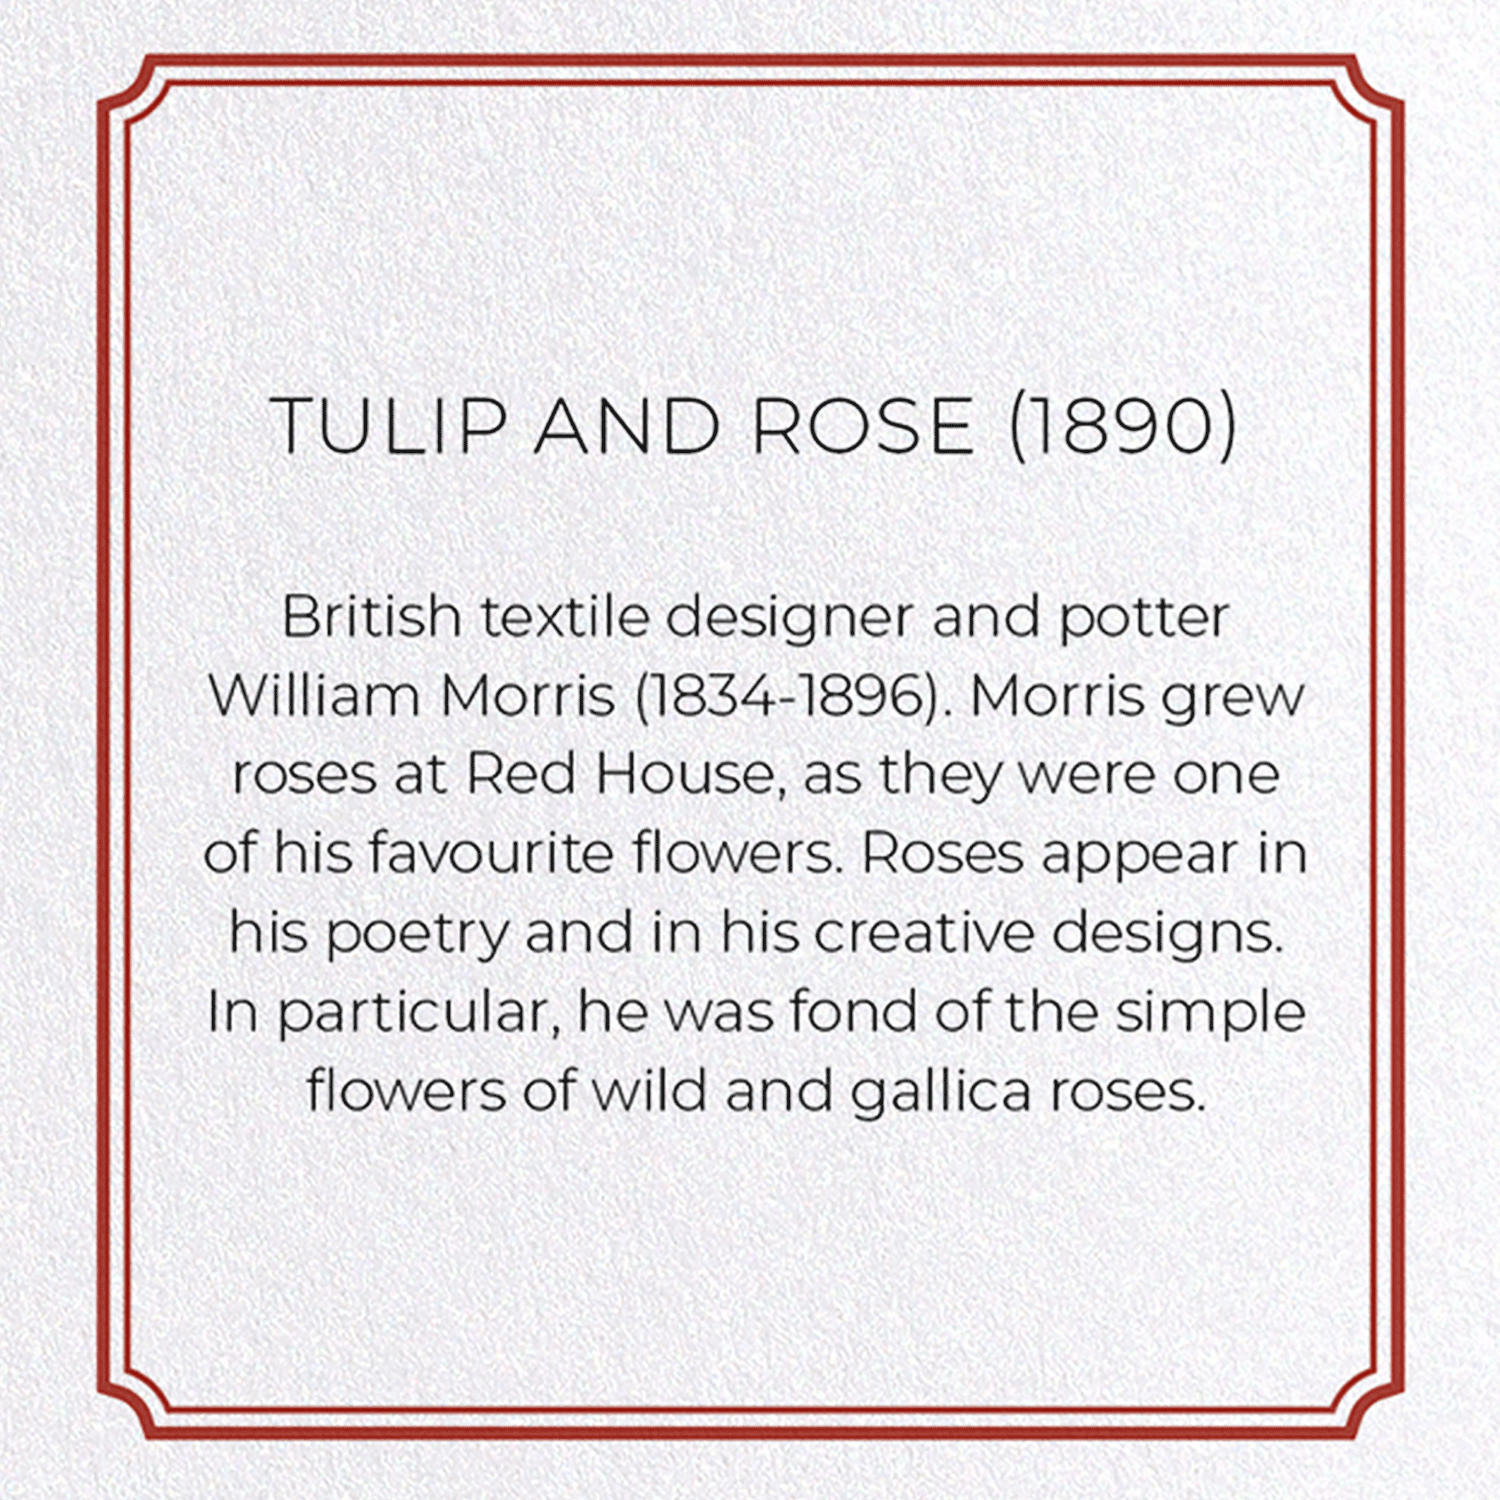 TULIP AND ROSE (1890)